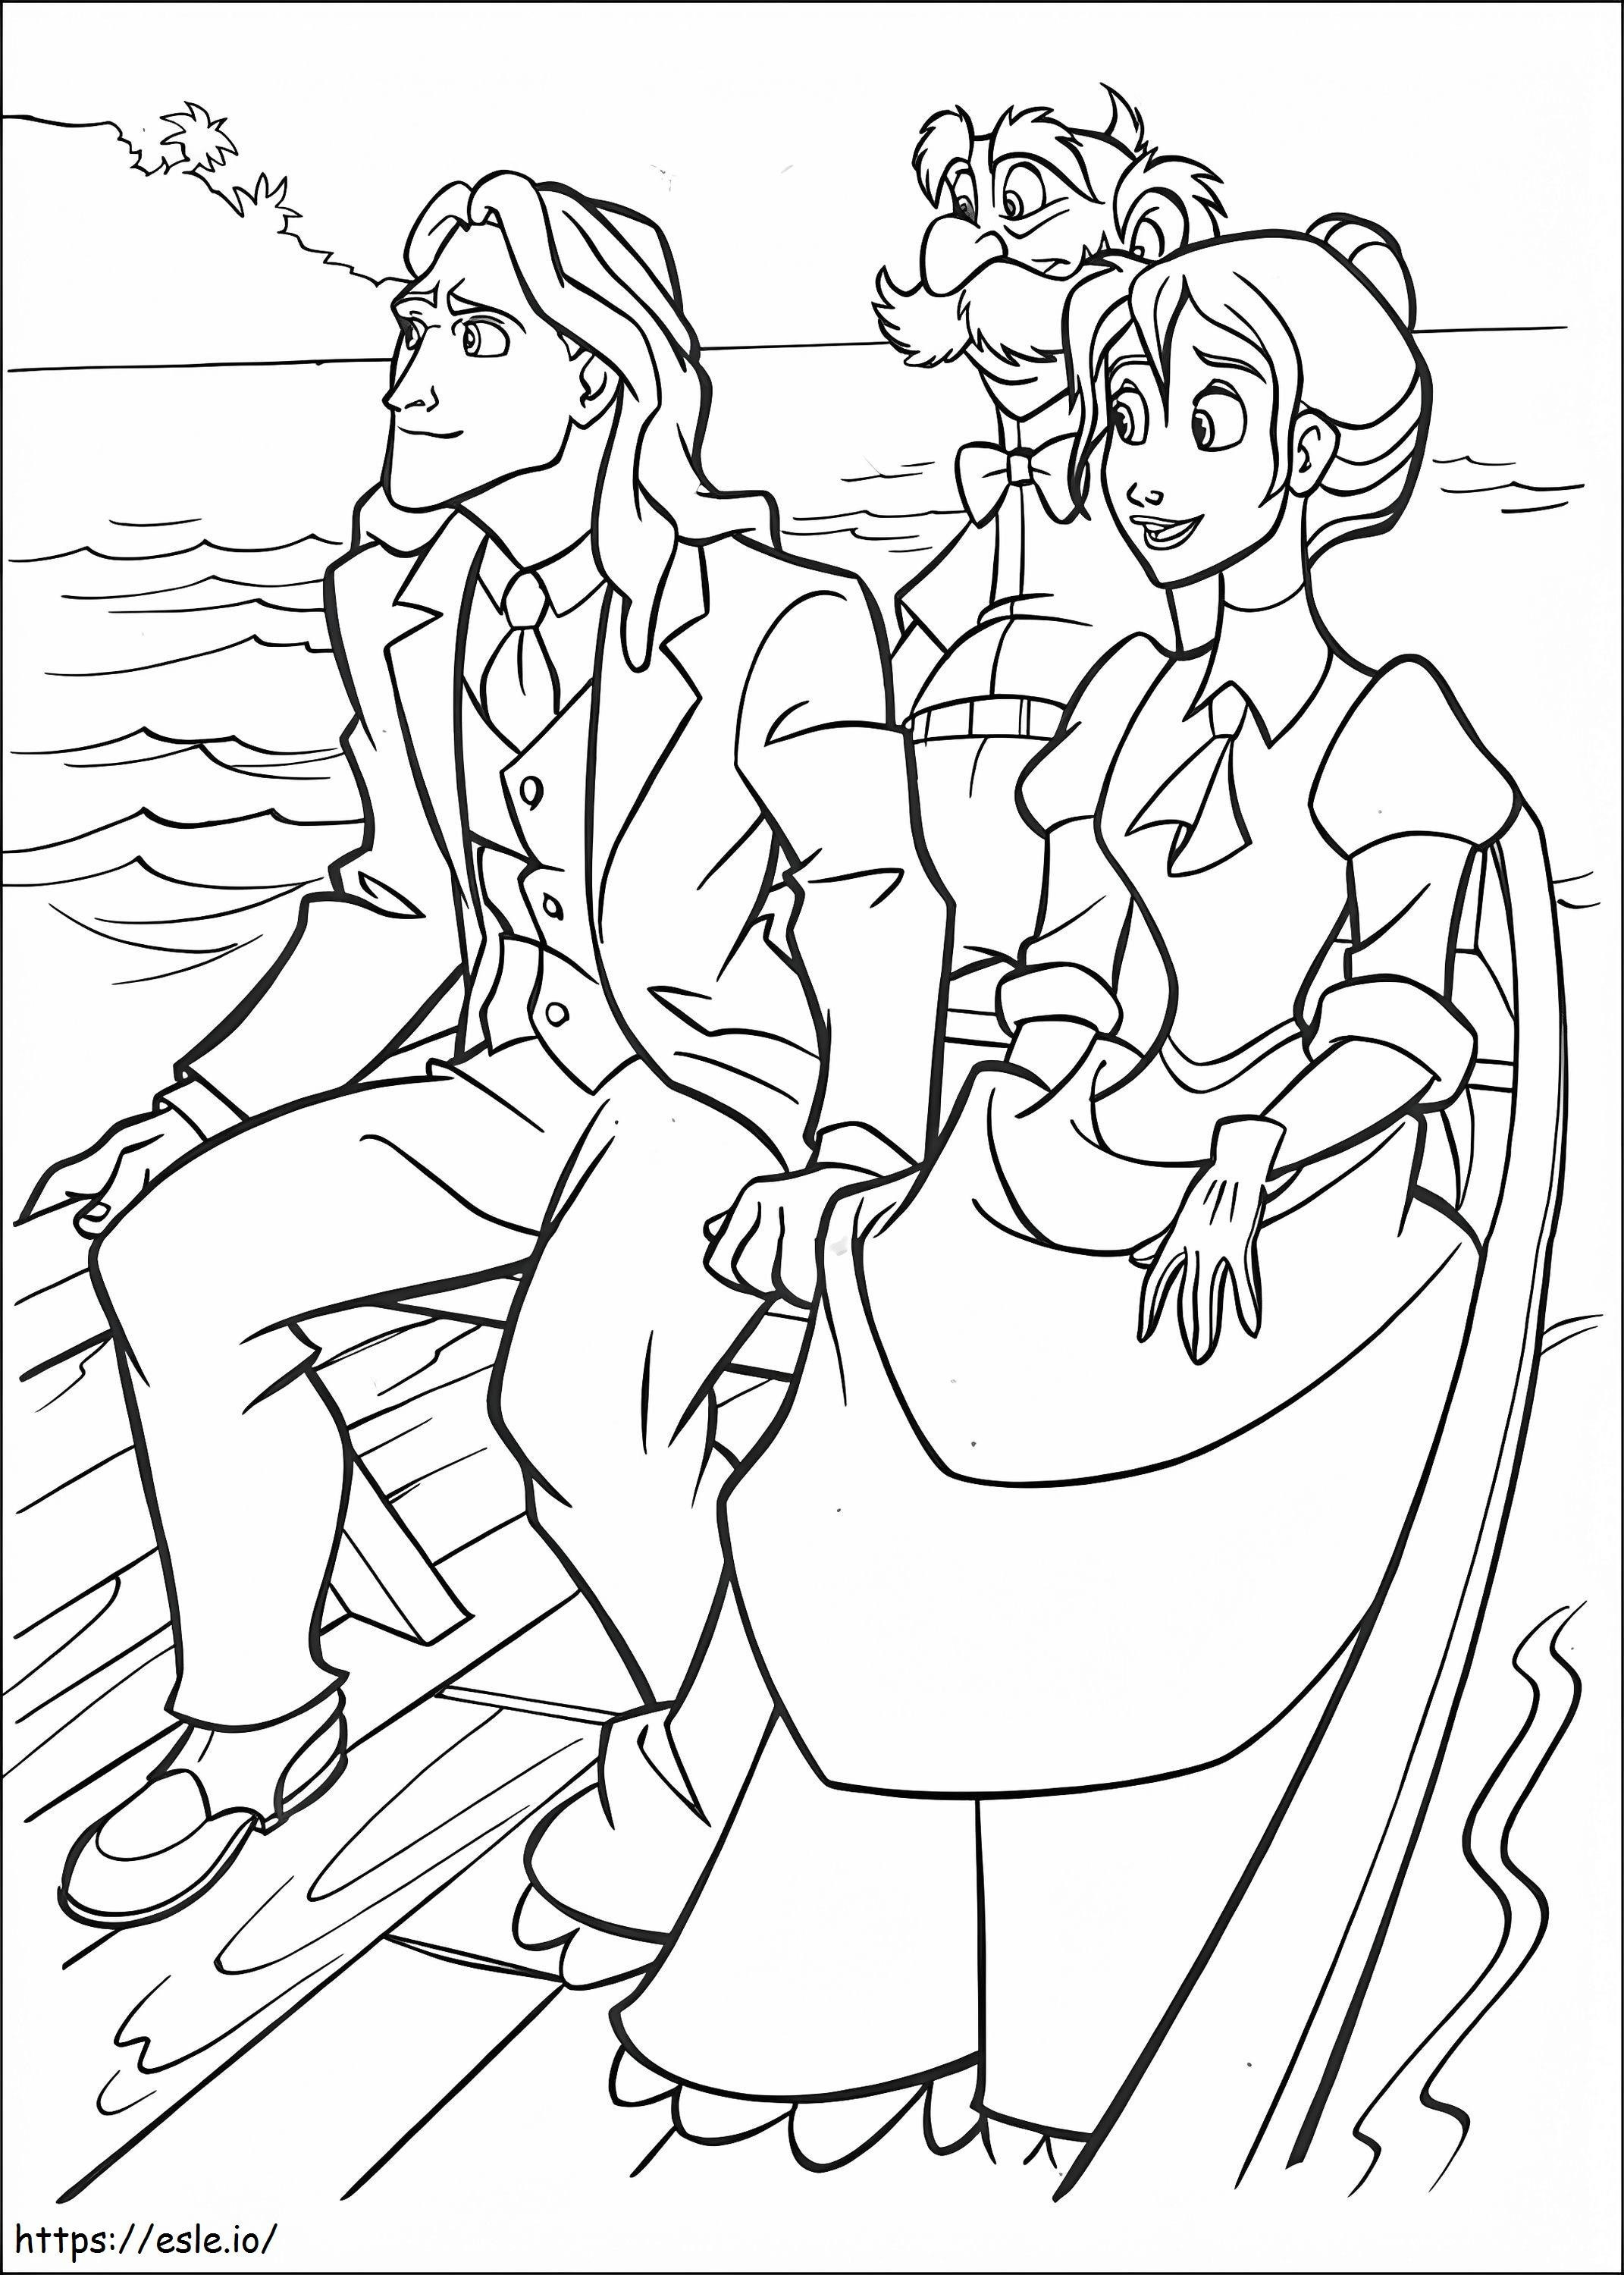 Tarzan und Jane Professor Archimedes Q. Porter auf dem Boot ausmalbilder